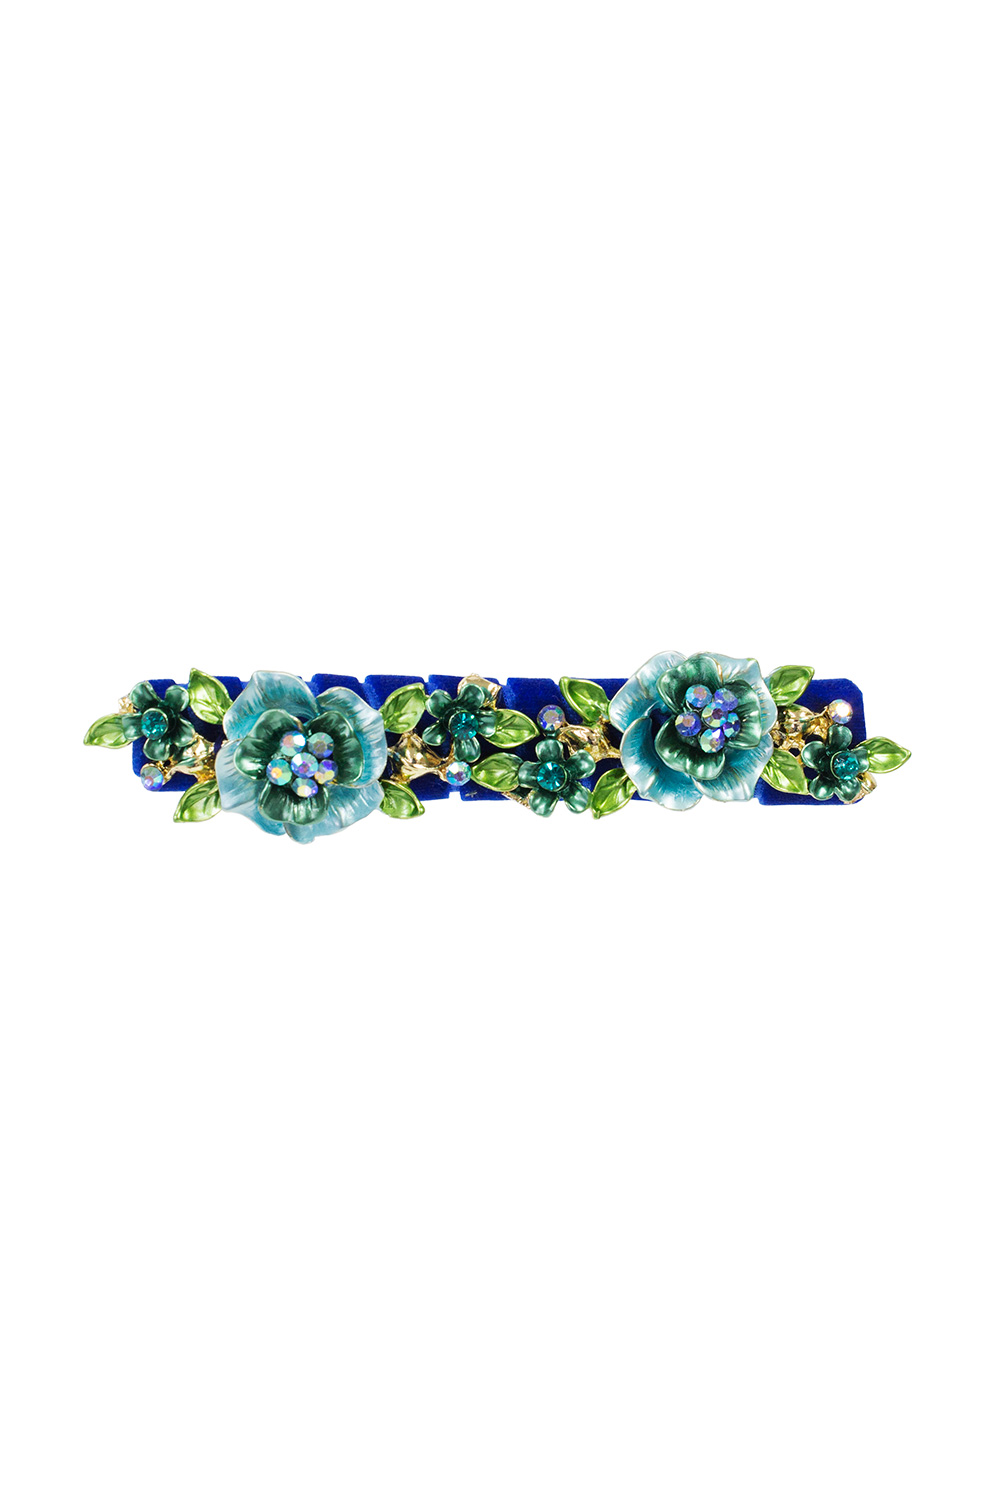 royal blue floral hair clip